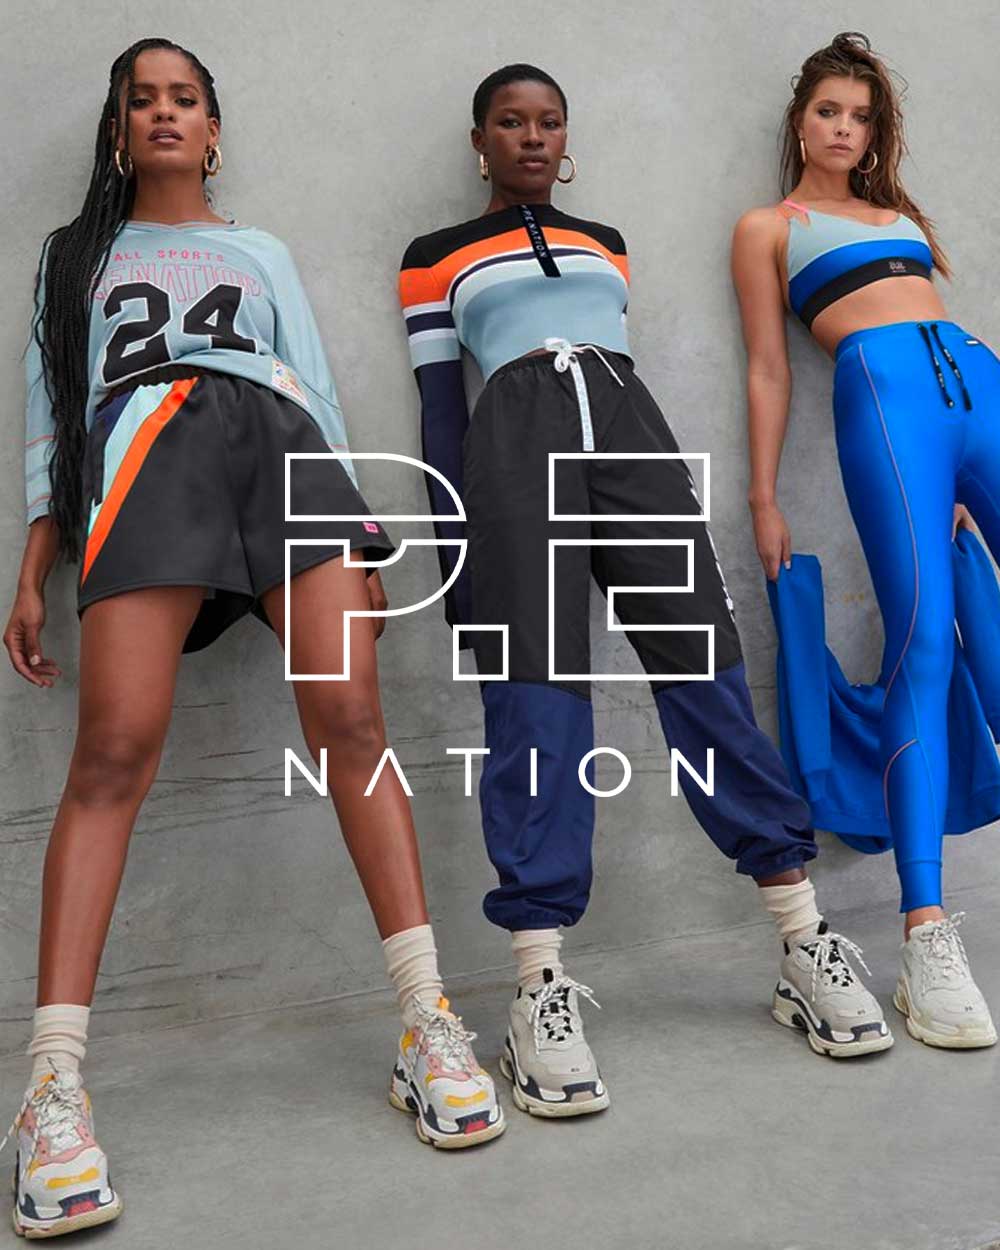 P.E Nation Australian fashion brand